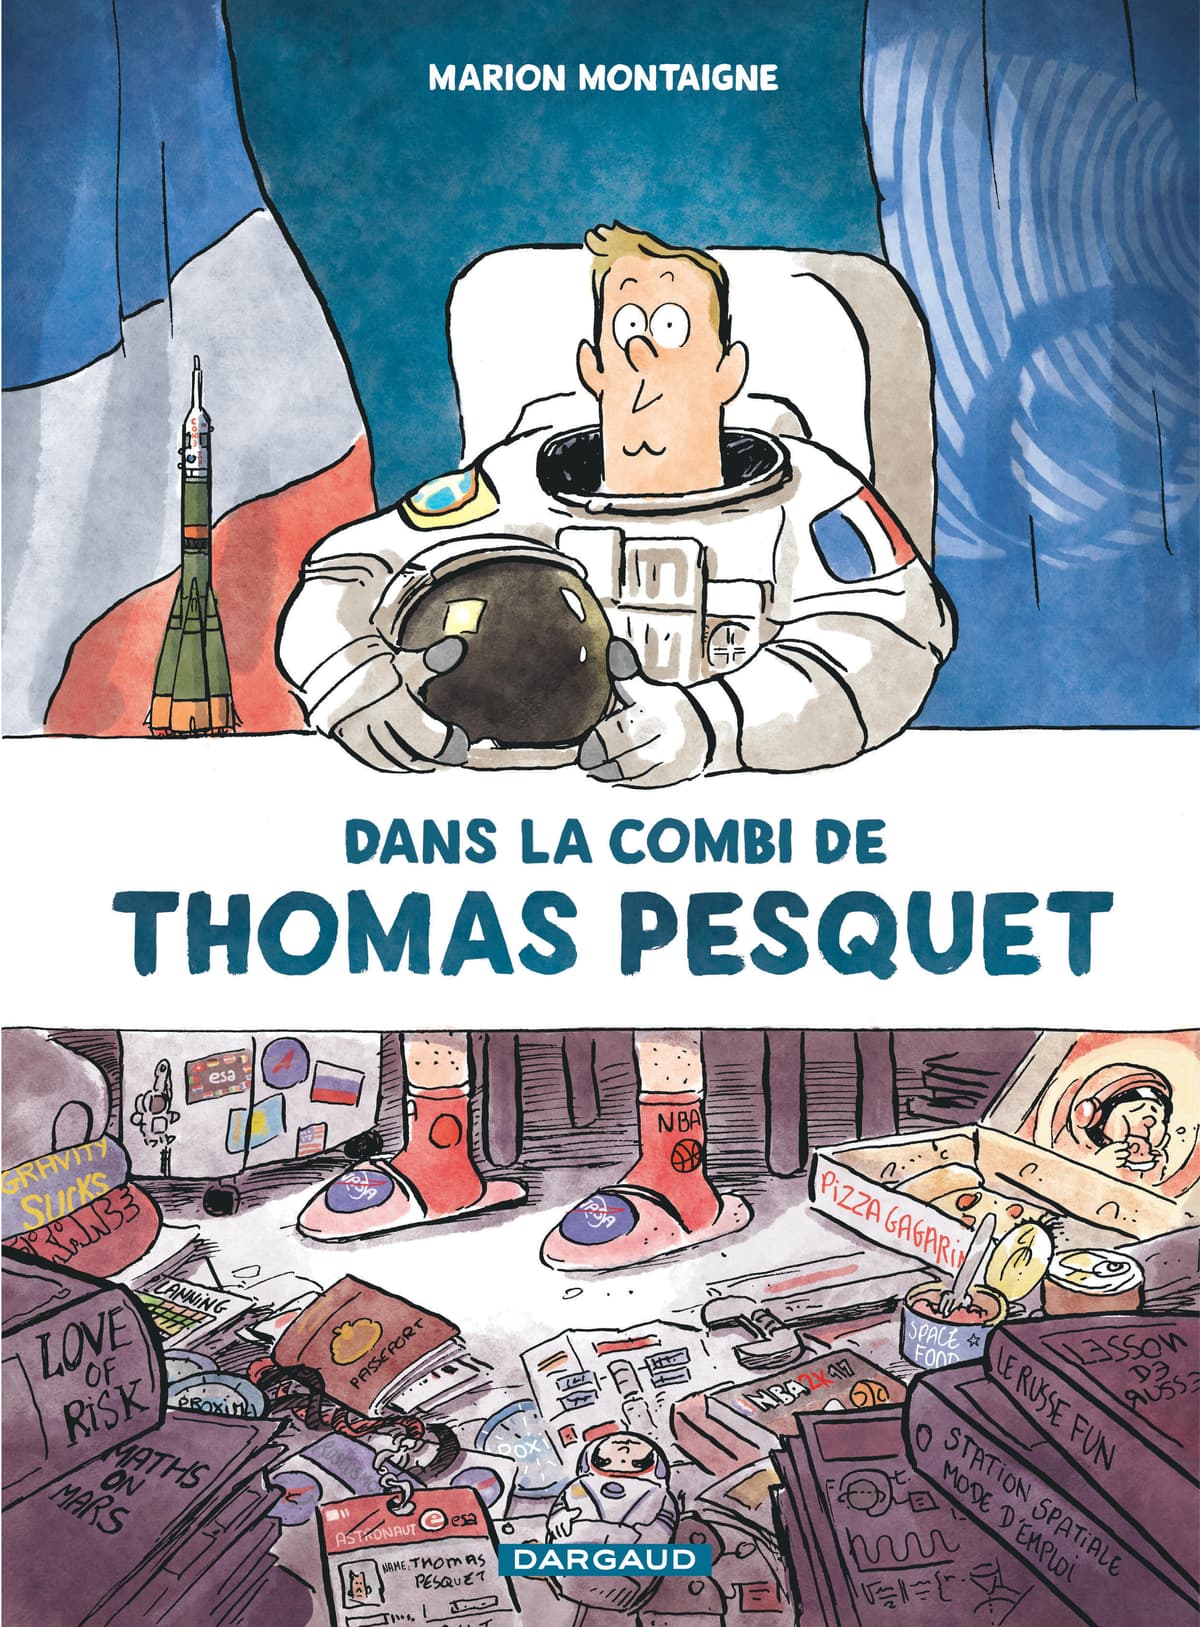 Après avoir conquis l'espace, Thomas Pesquet devient un ...